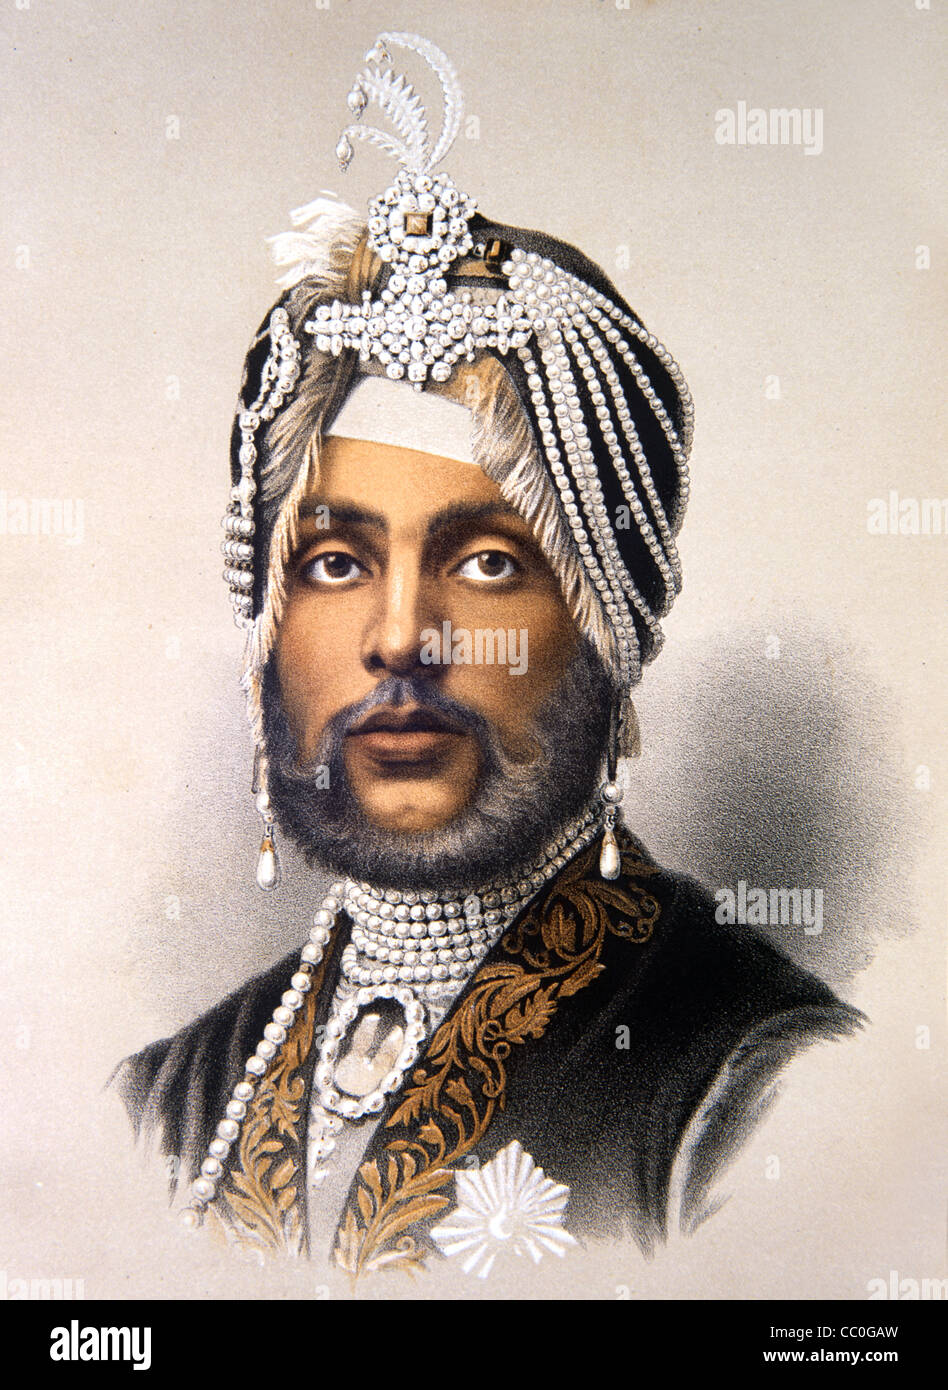 Maharajah ou Maharaja Duleep Singh (1838-93) exilé Maharaja du Punjab, a vécu la Grande-Bretagne (1854-86) a donné Koh-i-Noor, Kohinoor ou Koh-i-Nur Diamond à la reine Victoria. Illustration ancienne ou gravure Banque D'Images